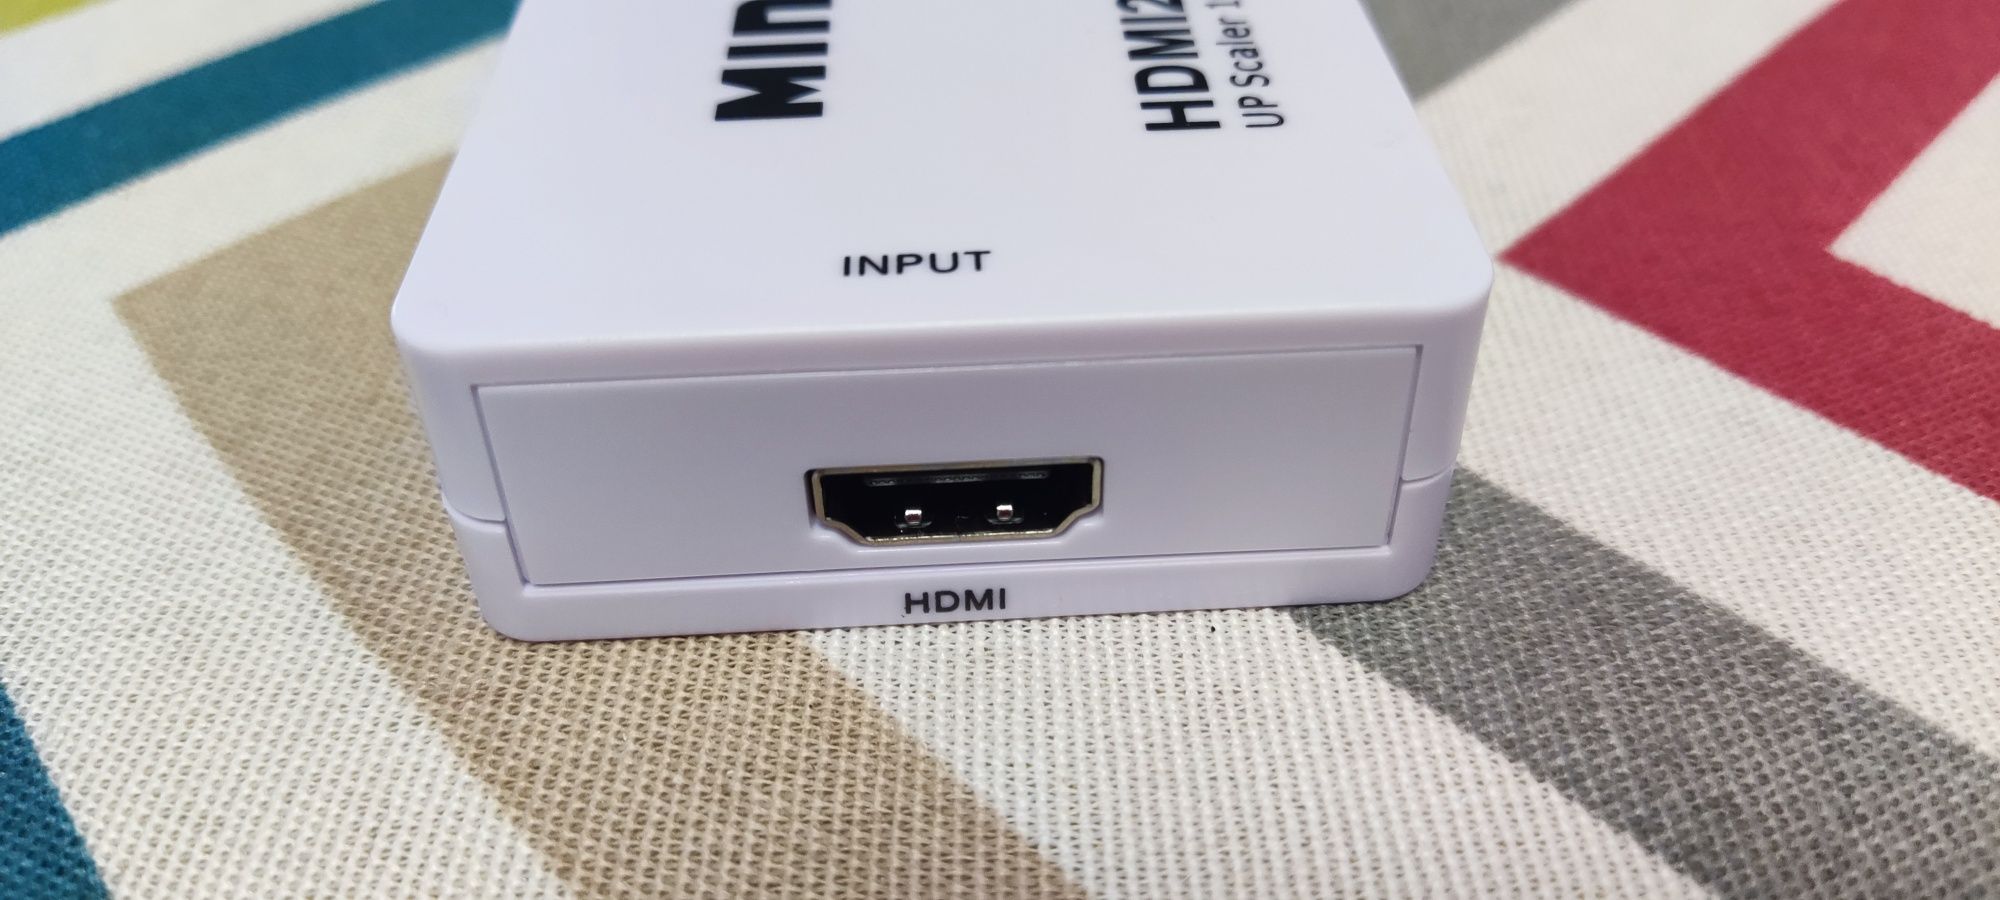 Conversor HDMI para svideo